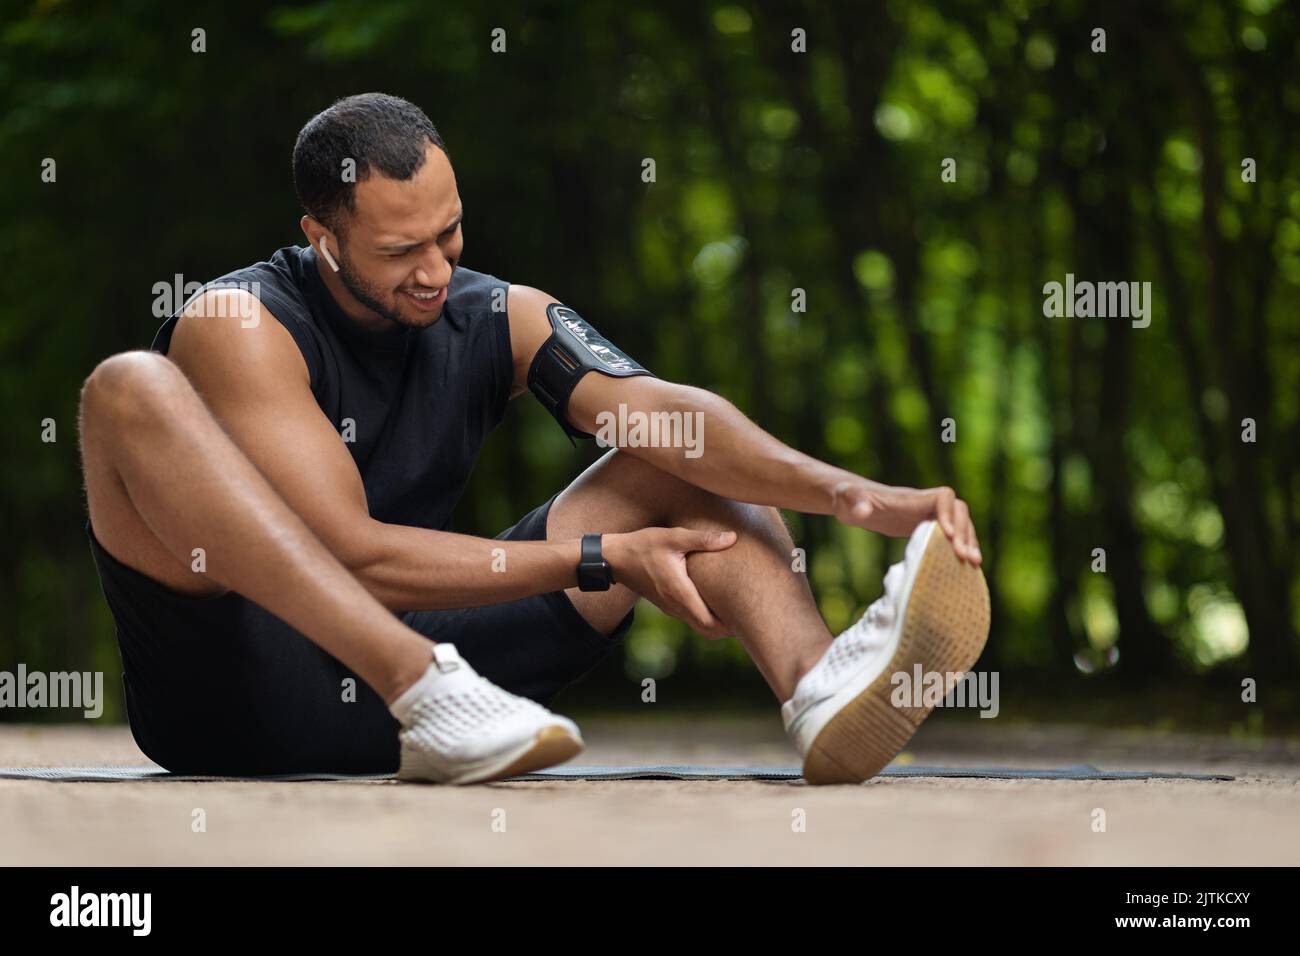 Un homme afro-américain sportif s'est blessé lors d'un entraînement en plein air Banque D'Images